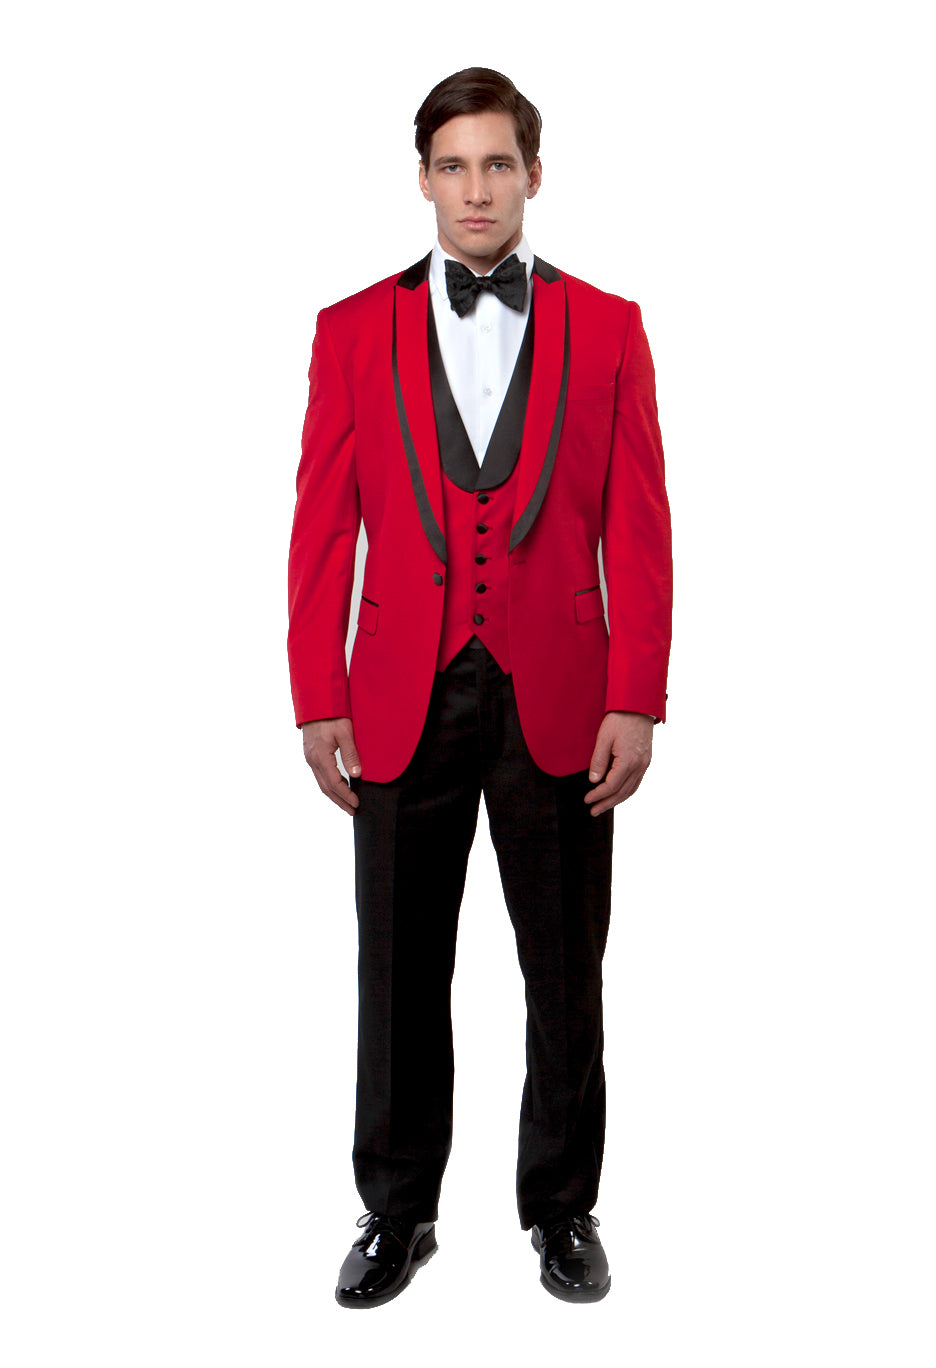 Red / Black Satin Bryan Michaels Shawl Collar Trim/ Peak Lapel Tuxedo Solid Slim Fit Prom Tuxedo For Men MT239S-04 - Hattitude